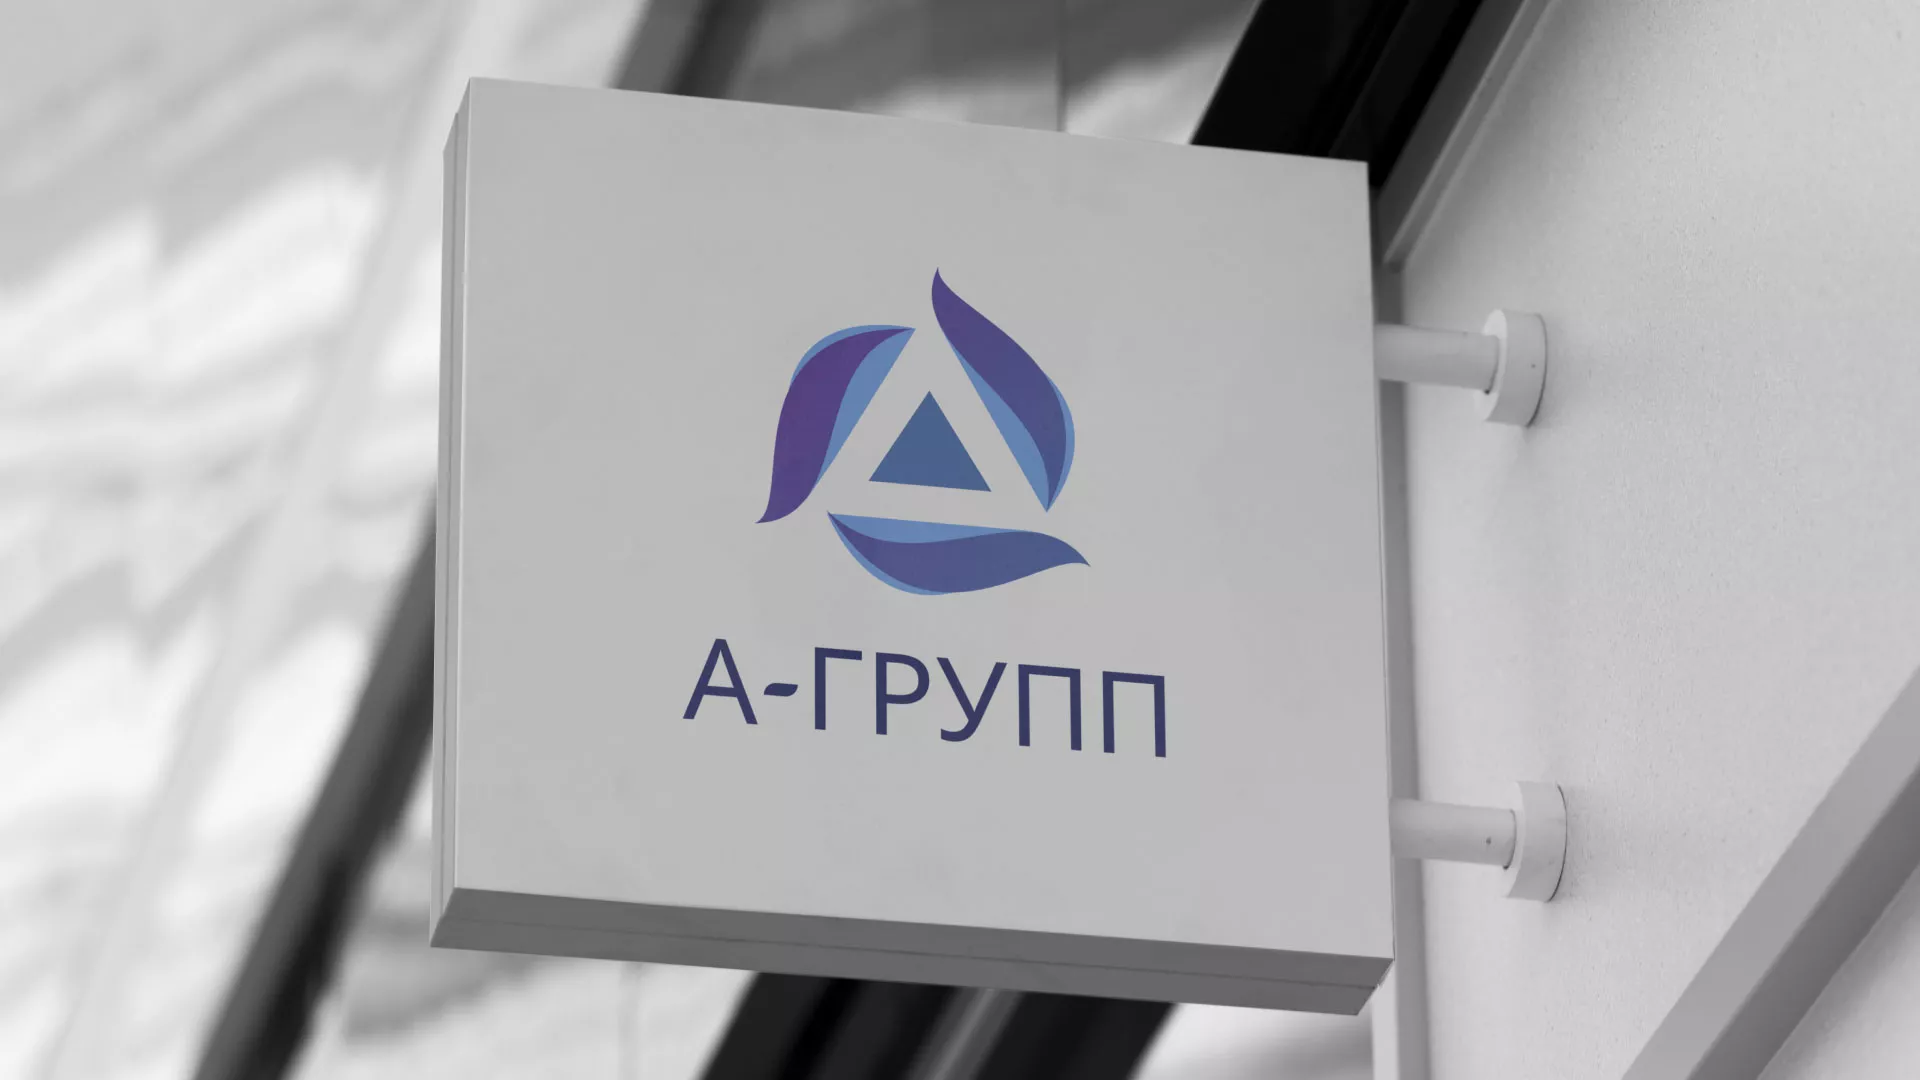 Создание логотипа компании «А-ГРУПП» в Вёшках